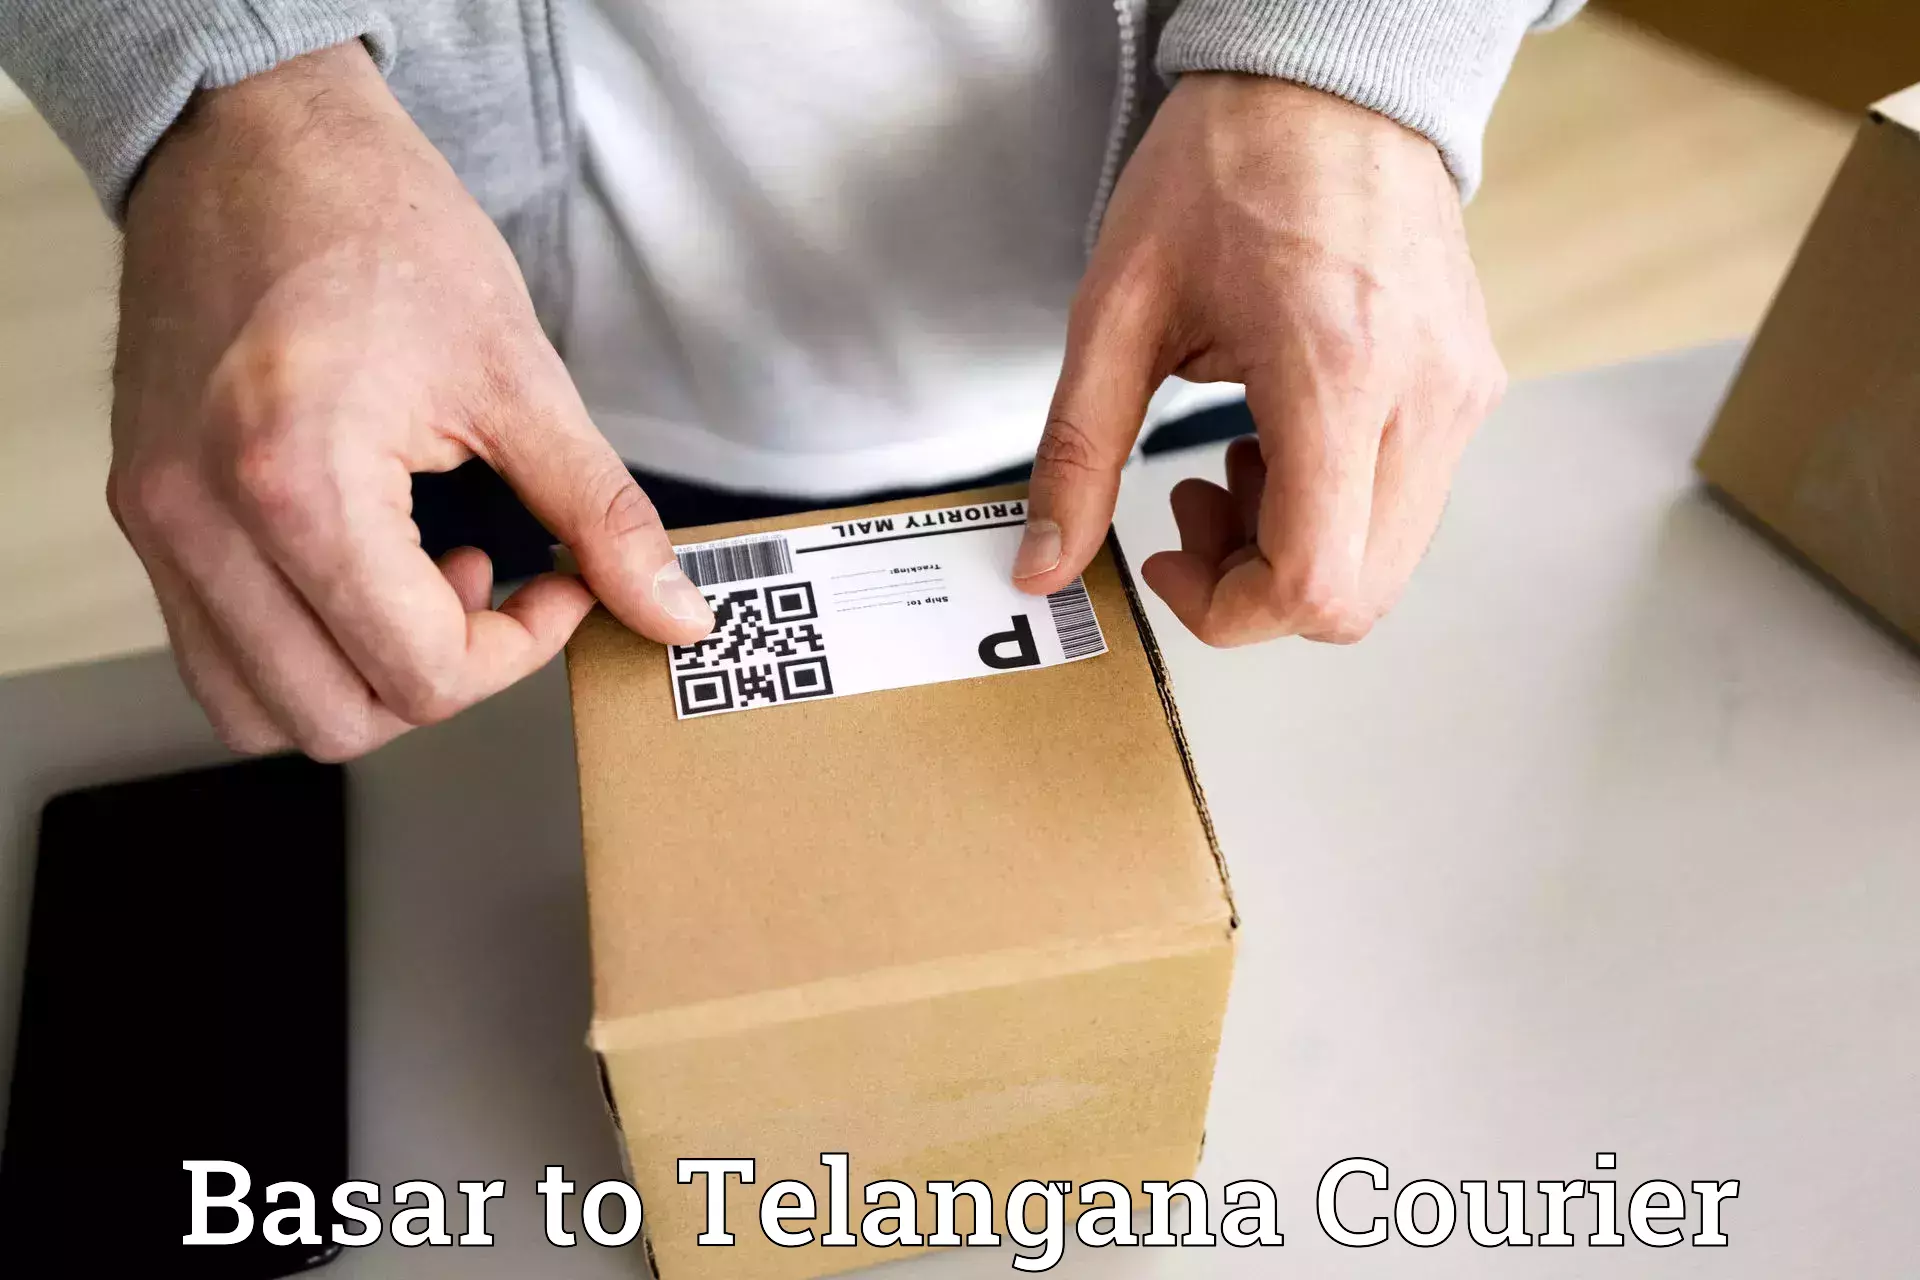 Quick dispatch service Basar to Telangana